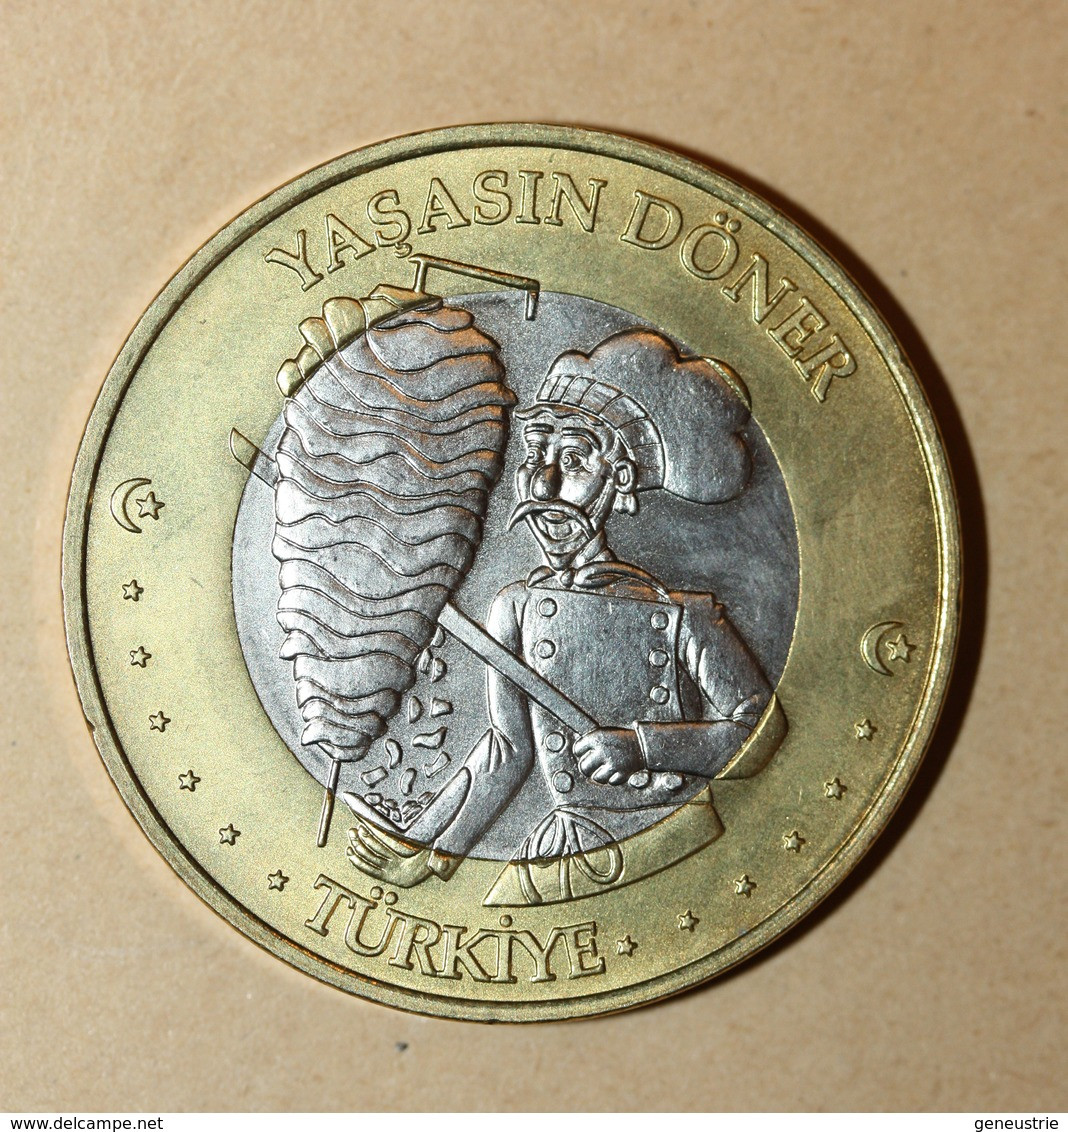 Monnaie Jeton De 3 Euros ? "Turkiye 2004 / Yasasin Döner" - Privatentwürfe